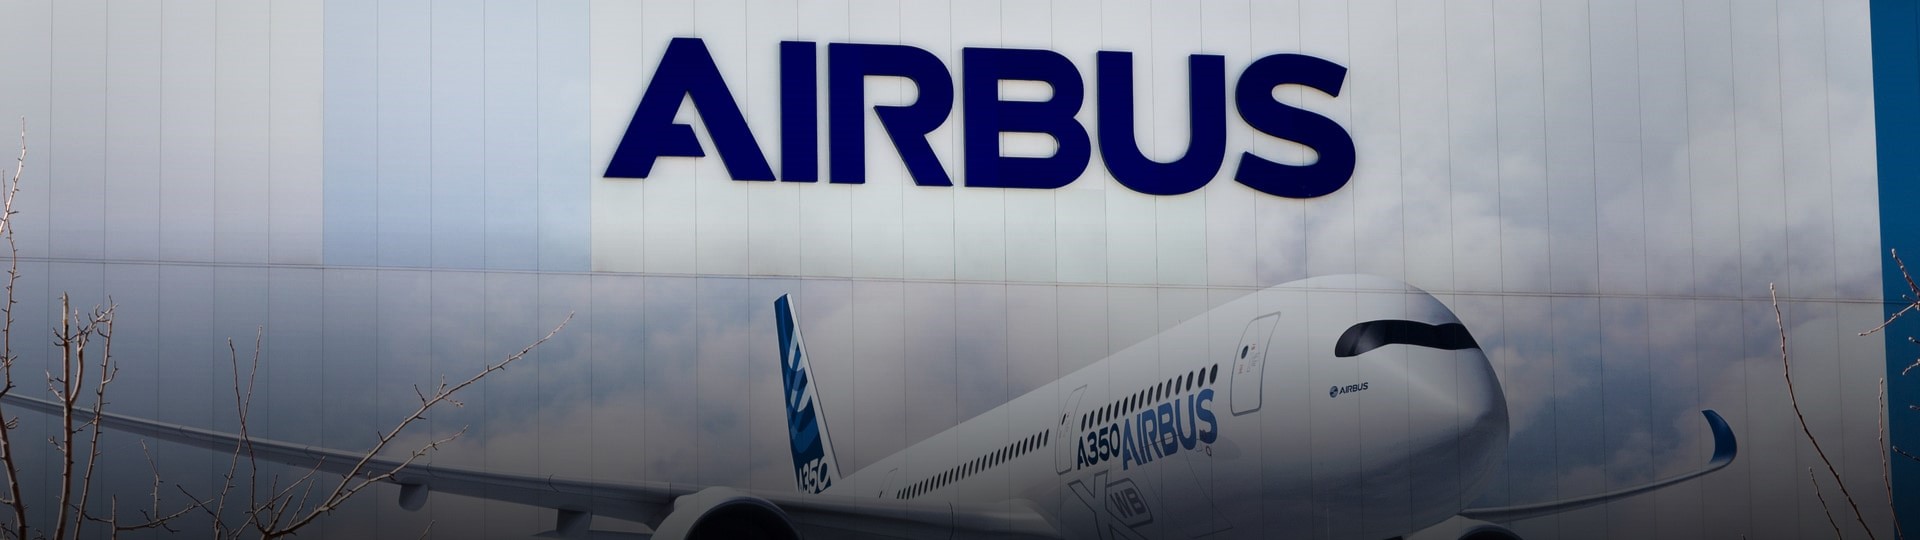 Airbus zvýšil plán výroby letadel, odvětví se podle něj zotavuje z pandemie